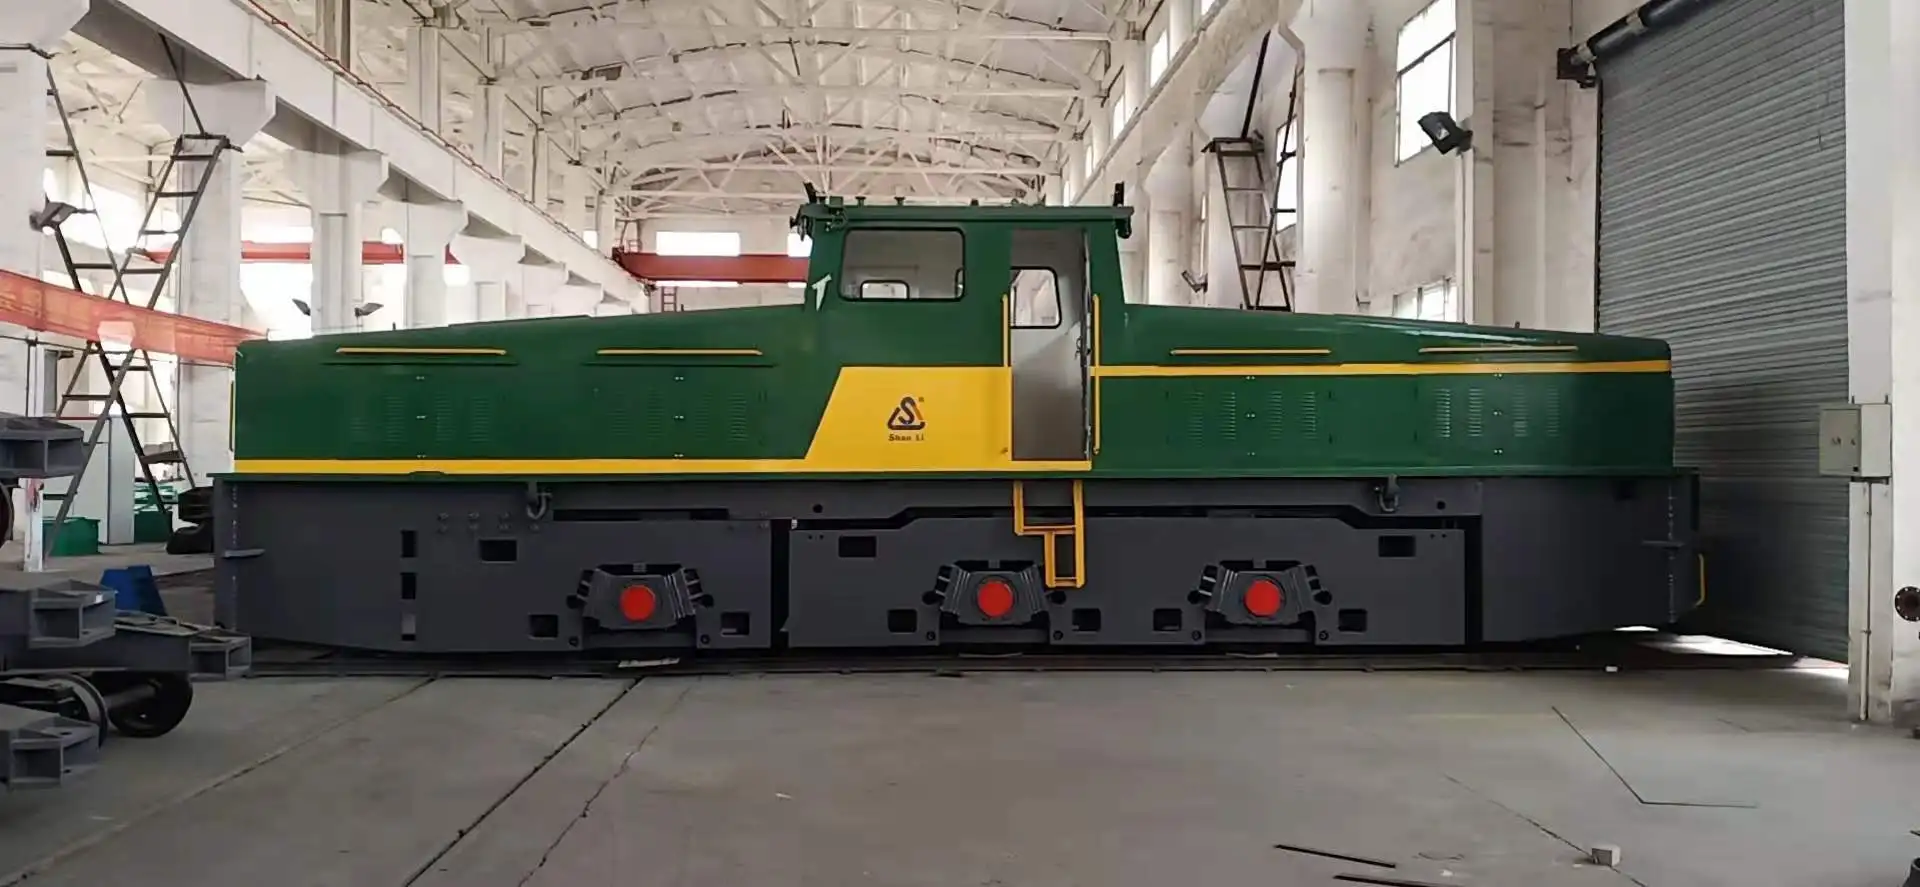 65 тонн, тележка, электрическая локомотивная стальная мельница, большой тонналь